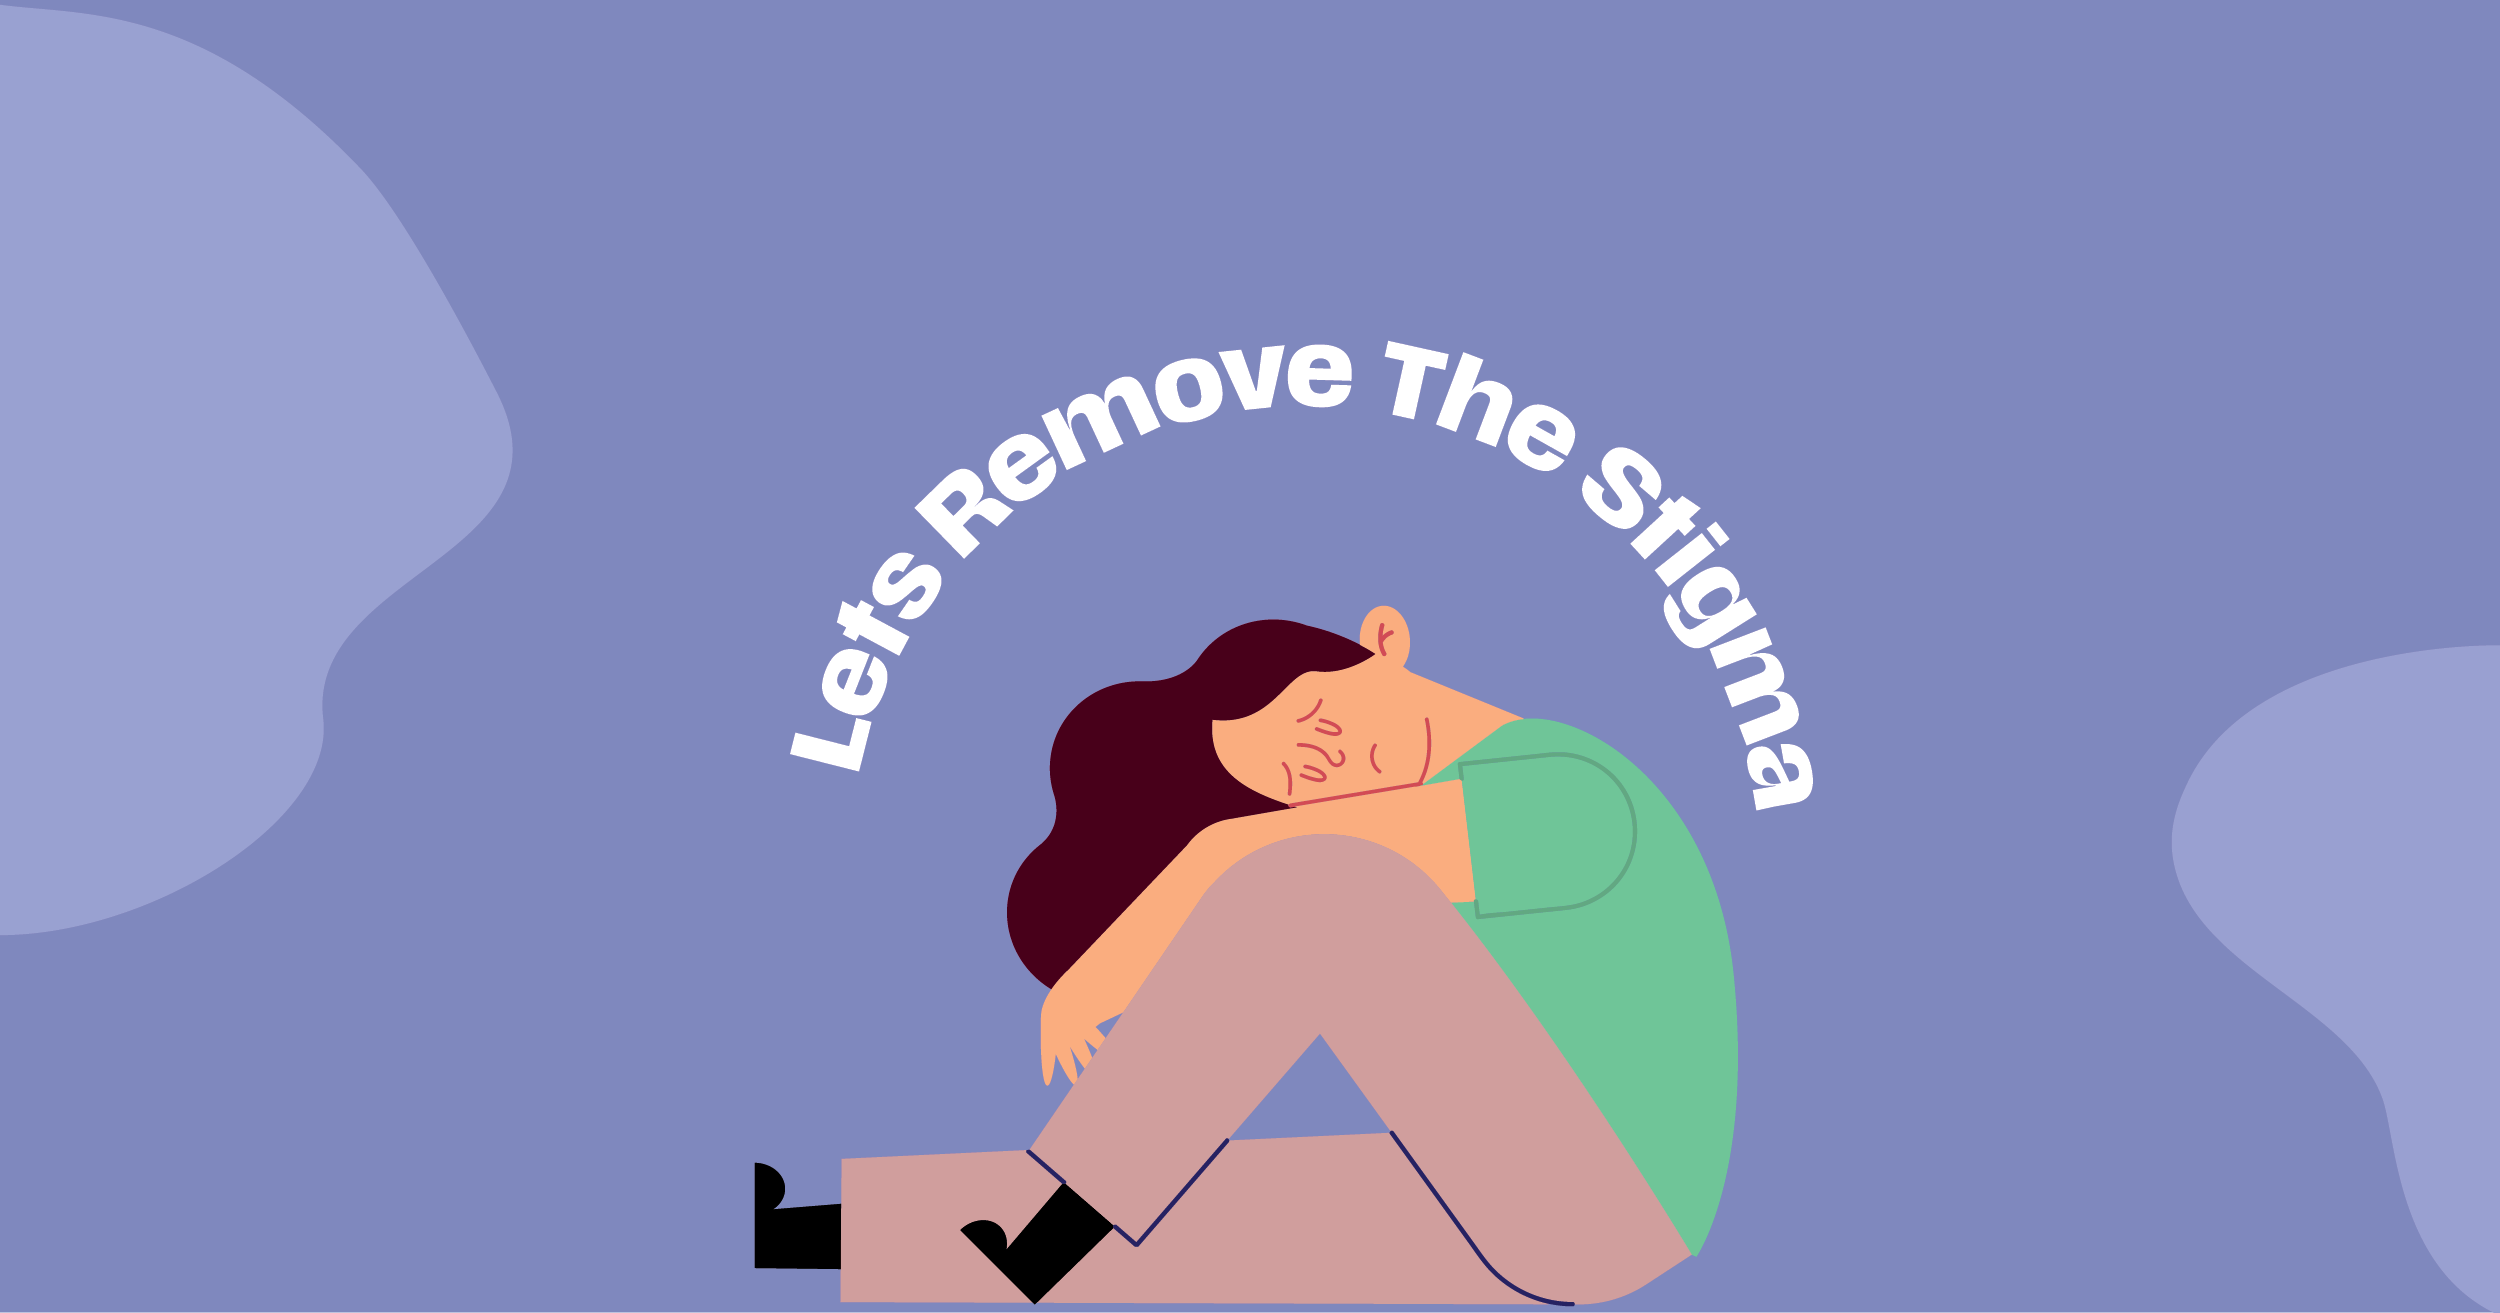 Let’s Remove The Stigma